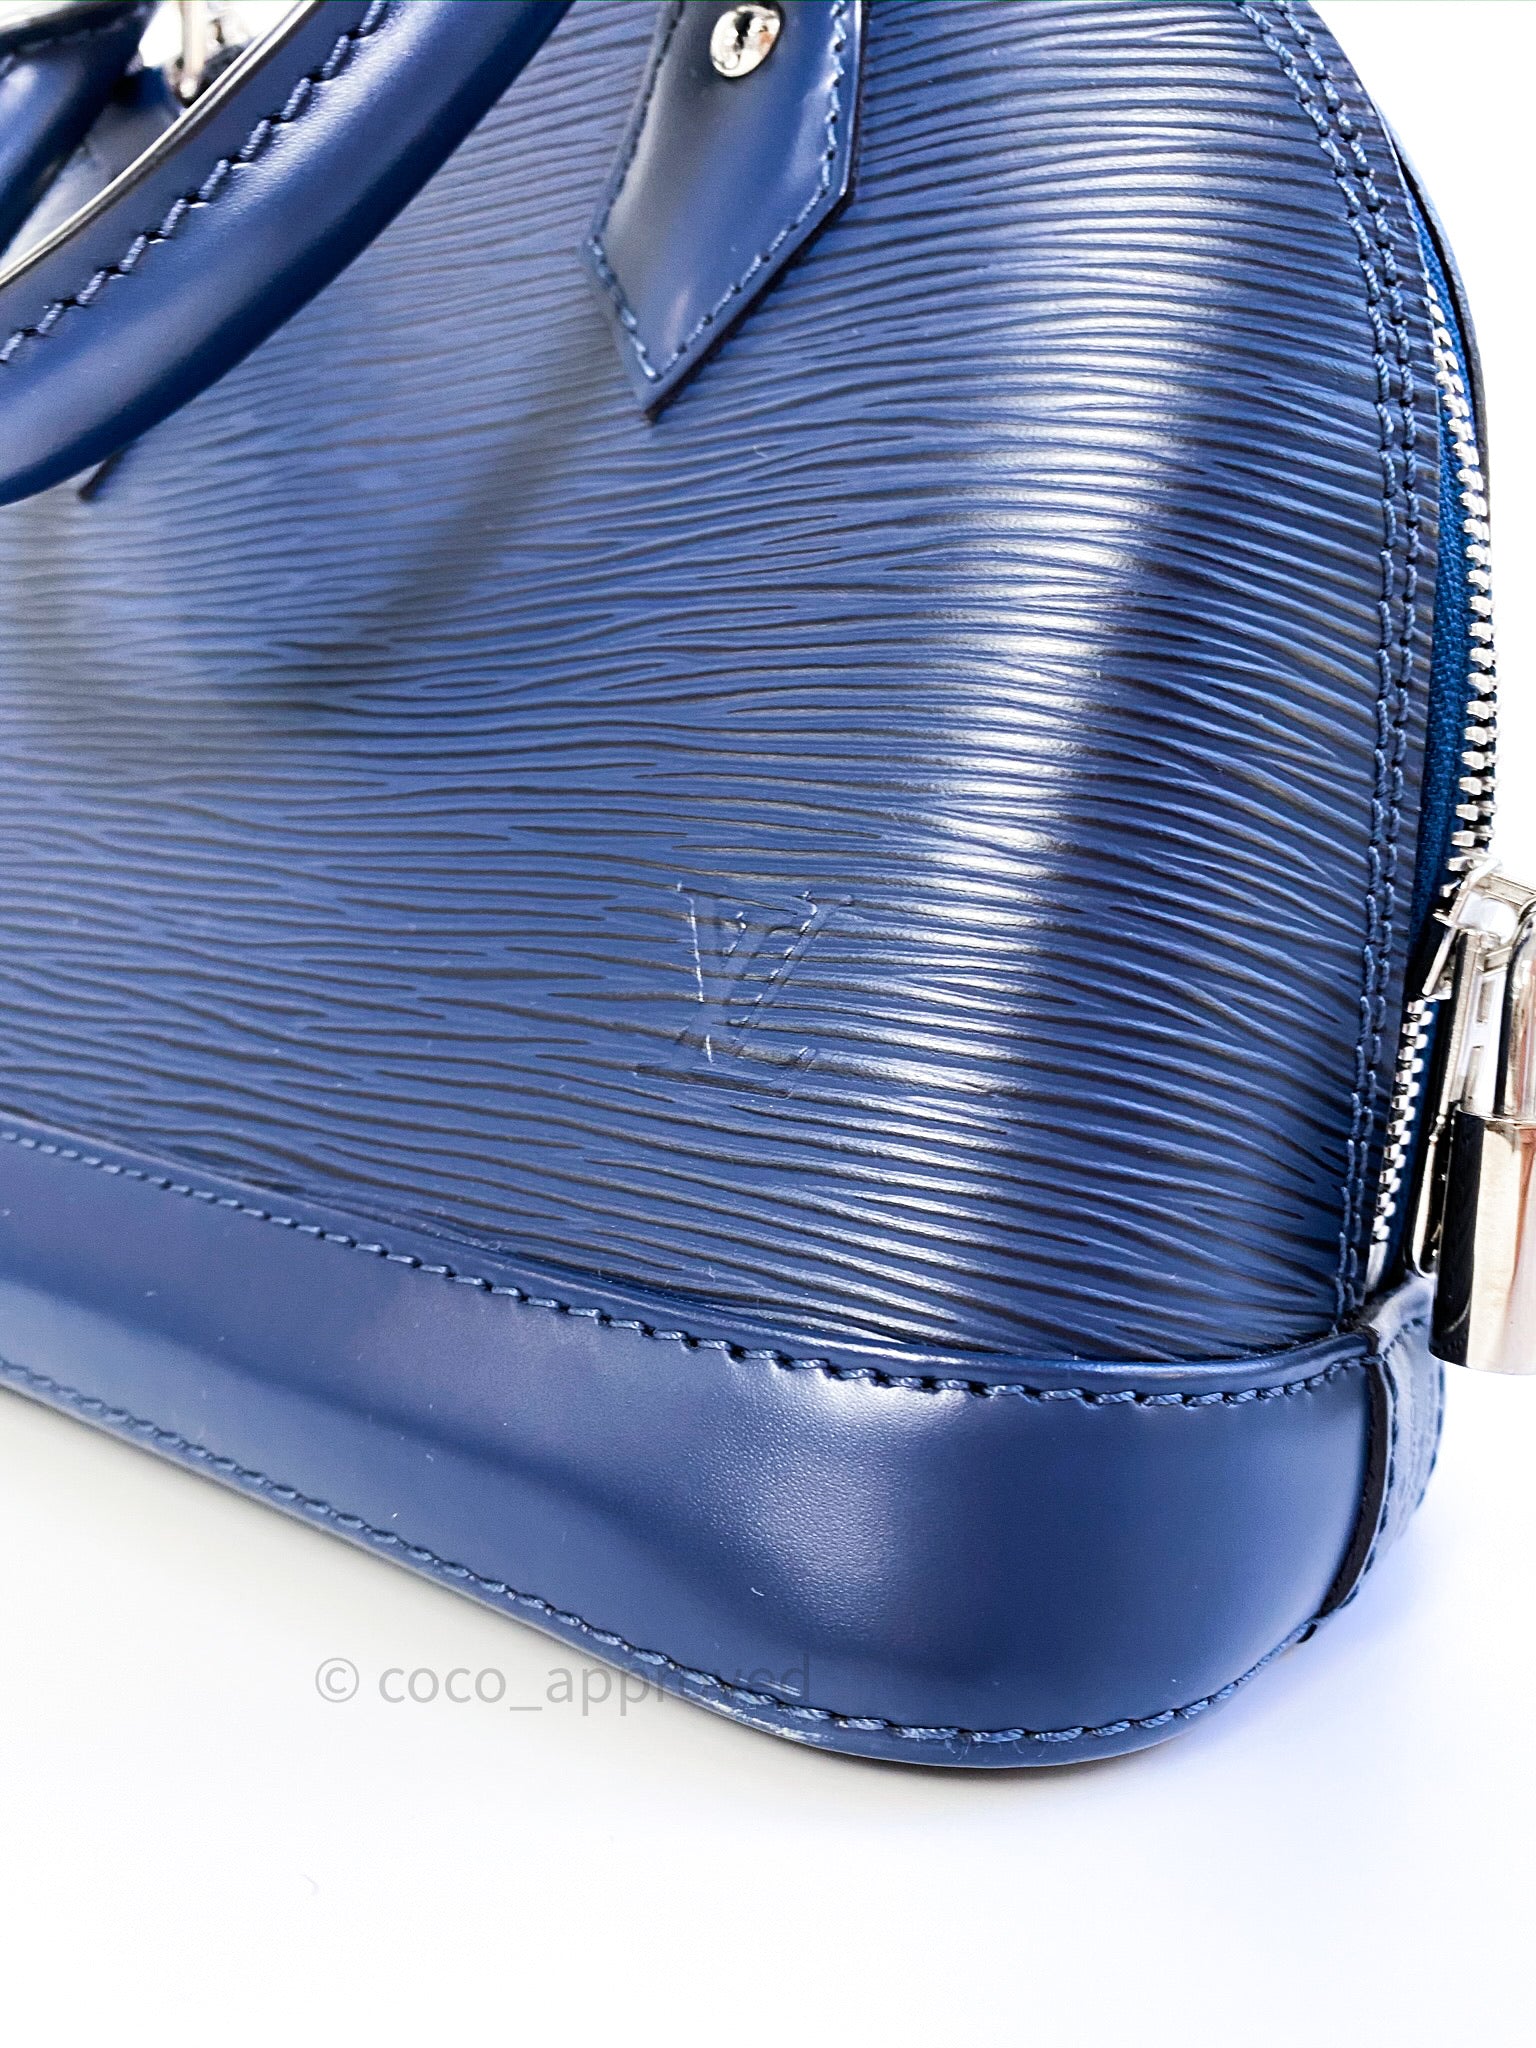 Louis Vuitton Alma BB Epi Leather Indigo